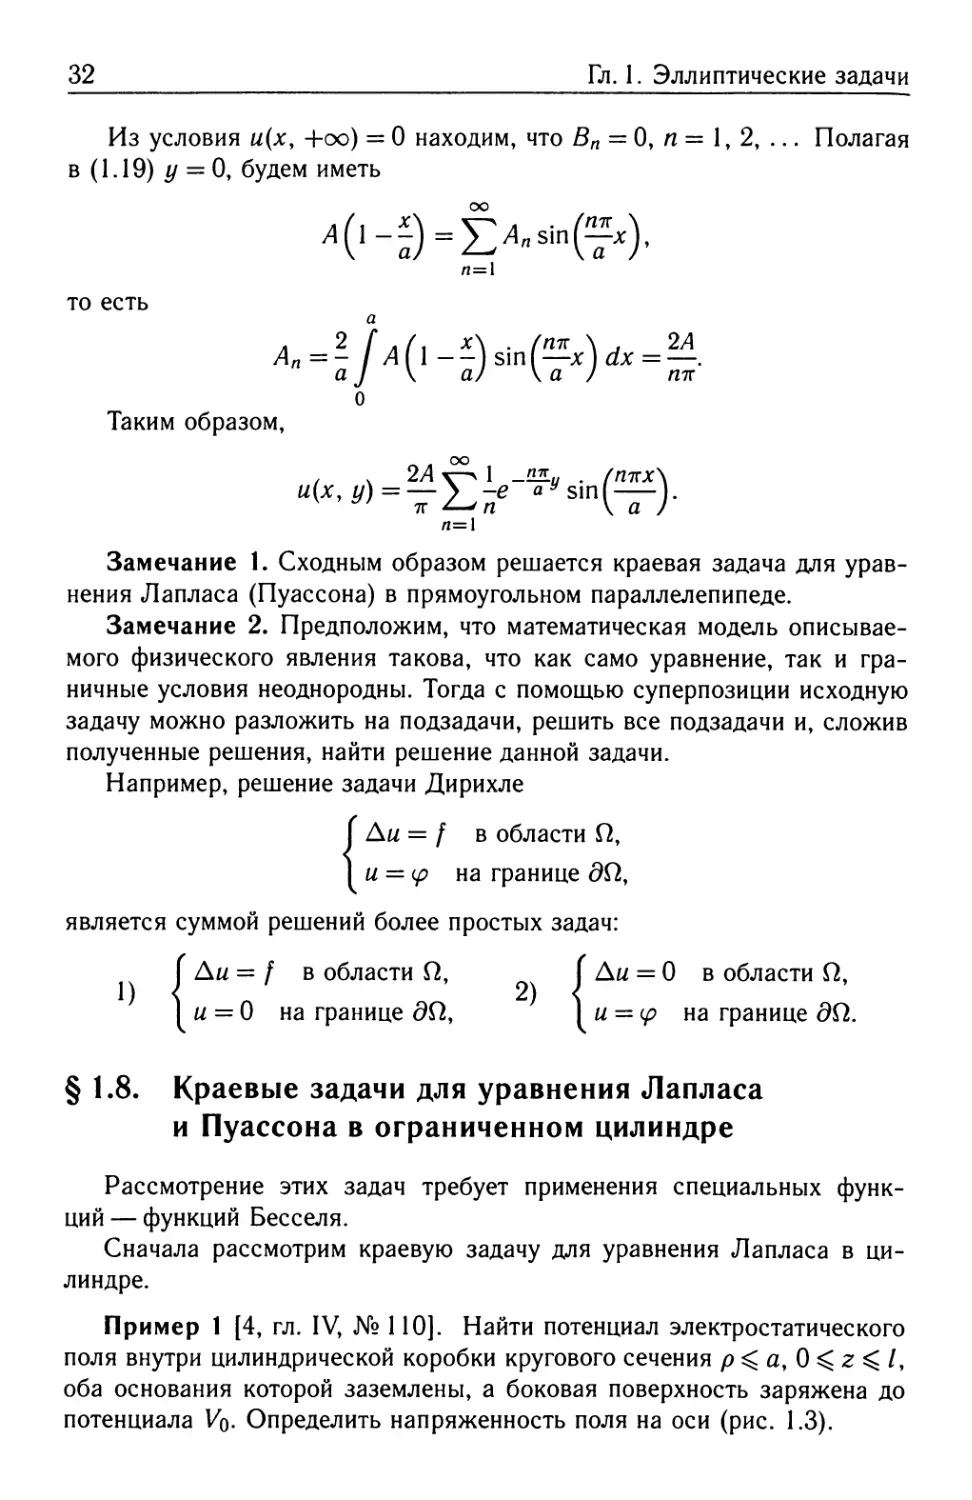 § 1.8. Краевые задачи для уравнения Лапласа и Пуассона в ограниченном цилиндре